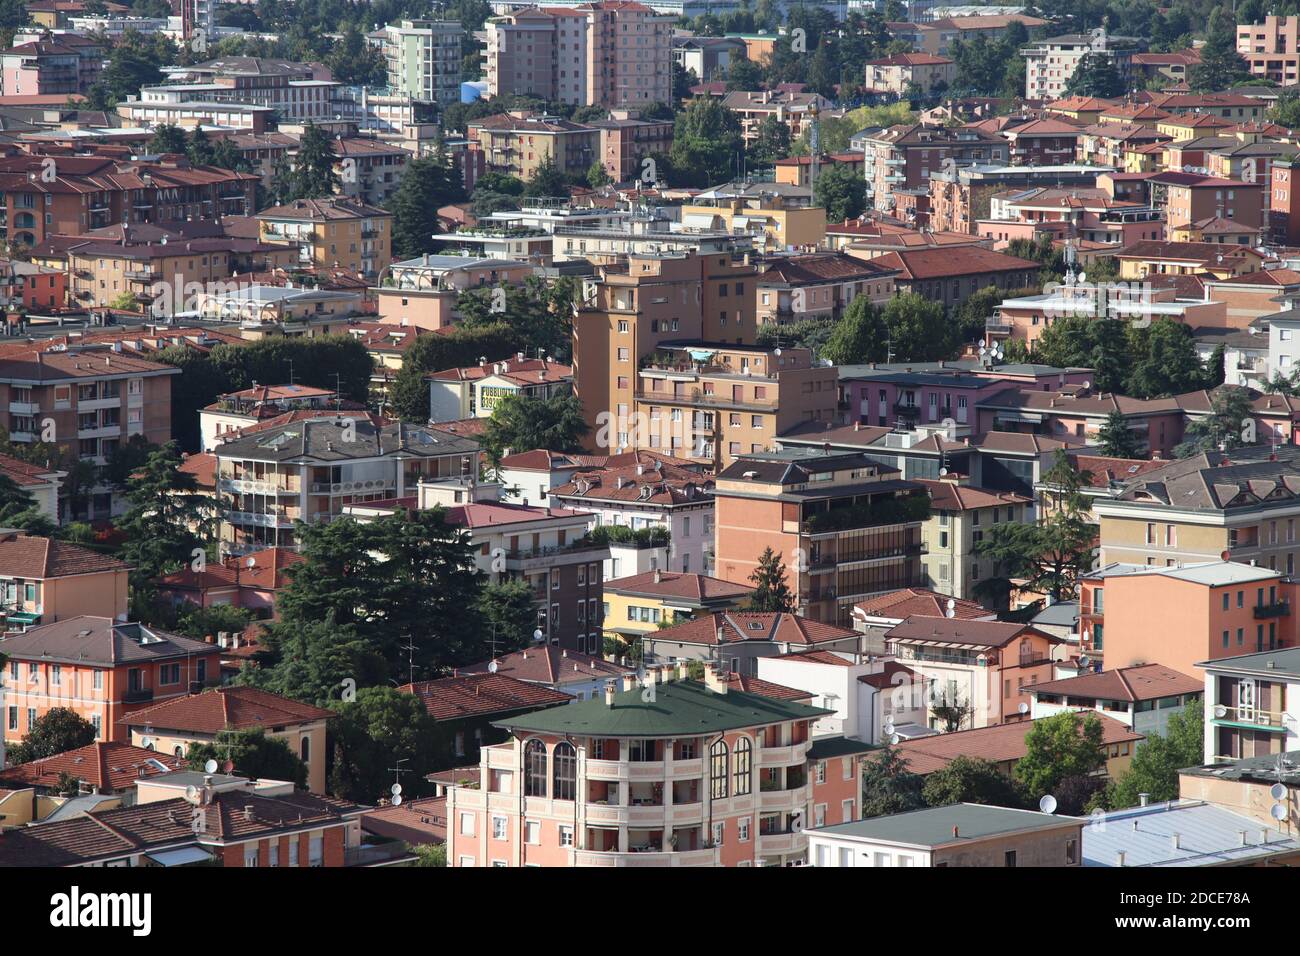 Vue panoramique aérienne du vieux centre-ville historique de Brescia En Italie Banque D'Images